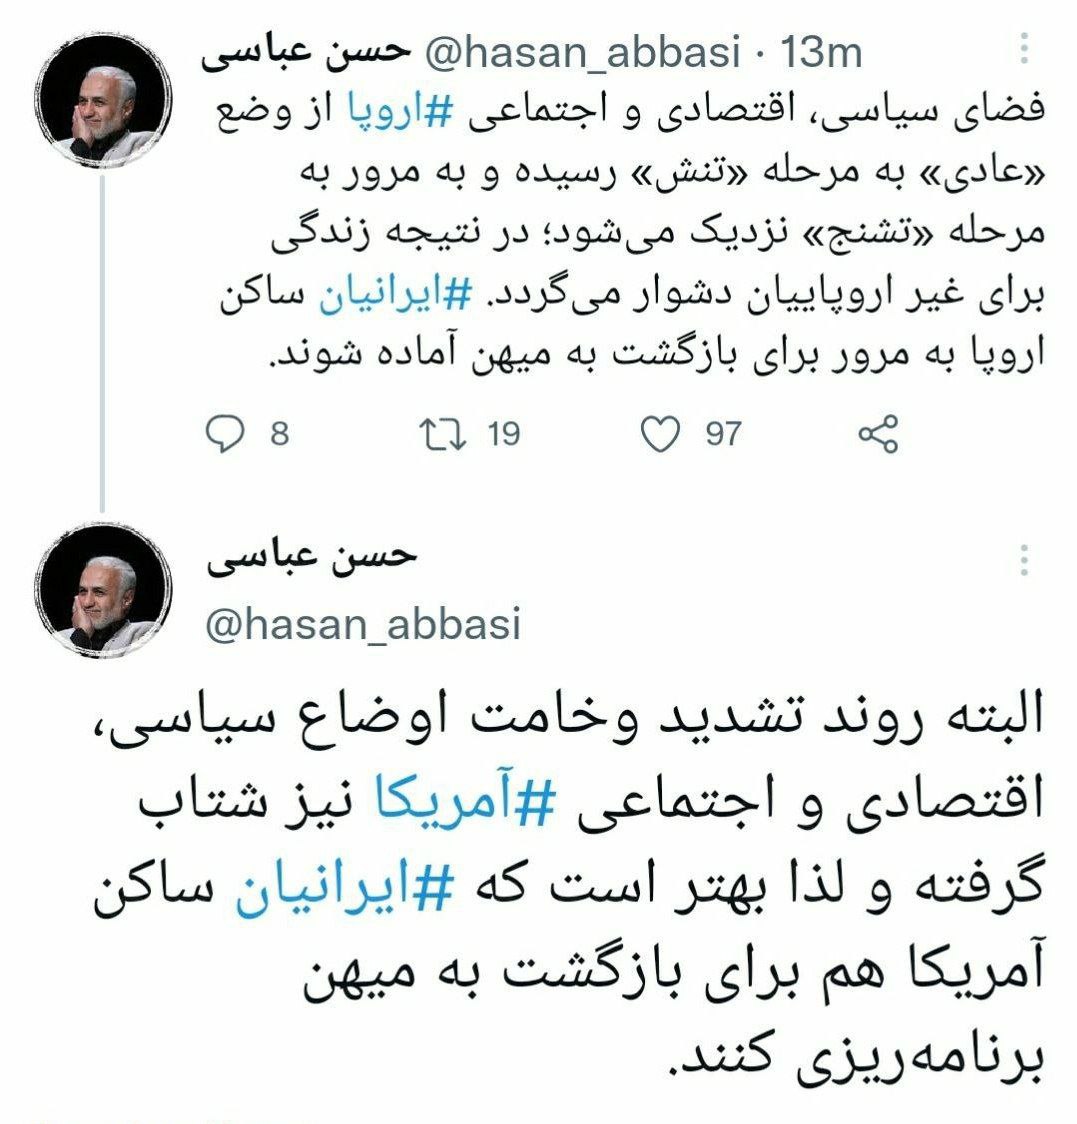 حسن عباسی خطاب به ایرانیان ساکن اروپا و آمریکا : آماده بازگشت به میهن شوید
